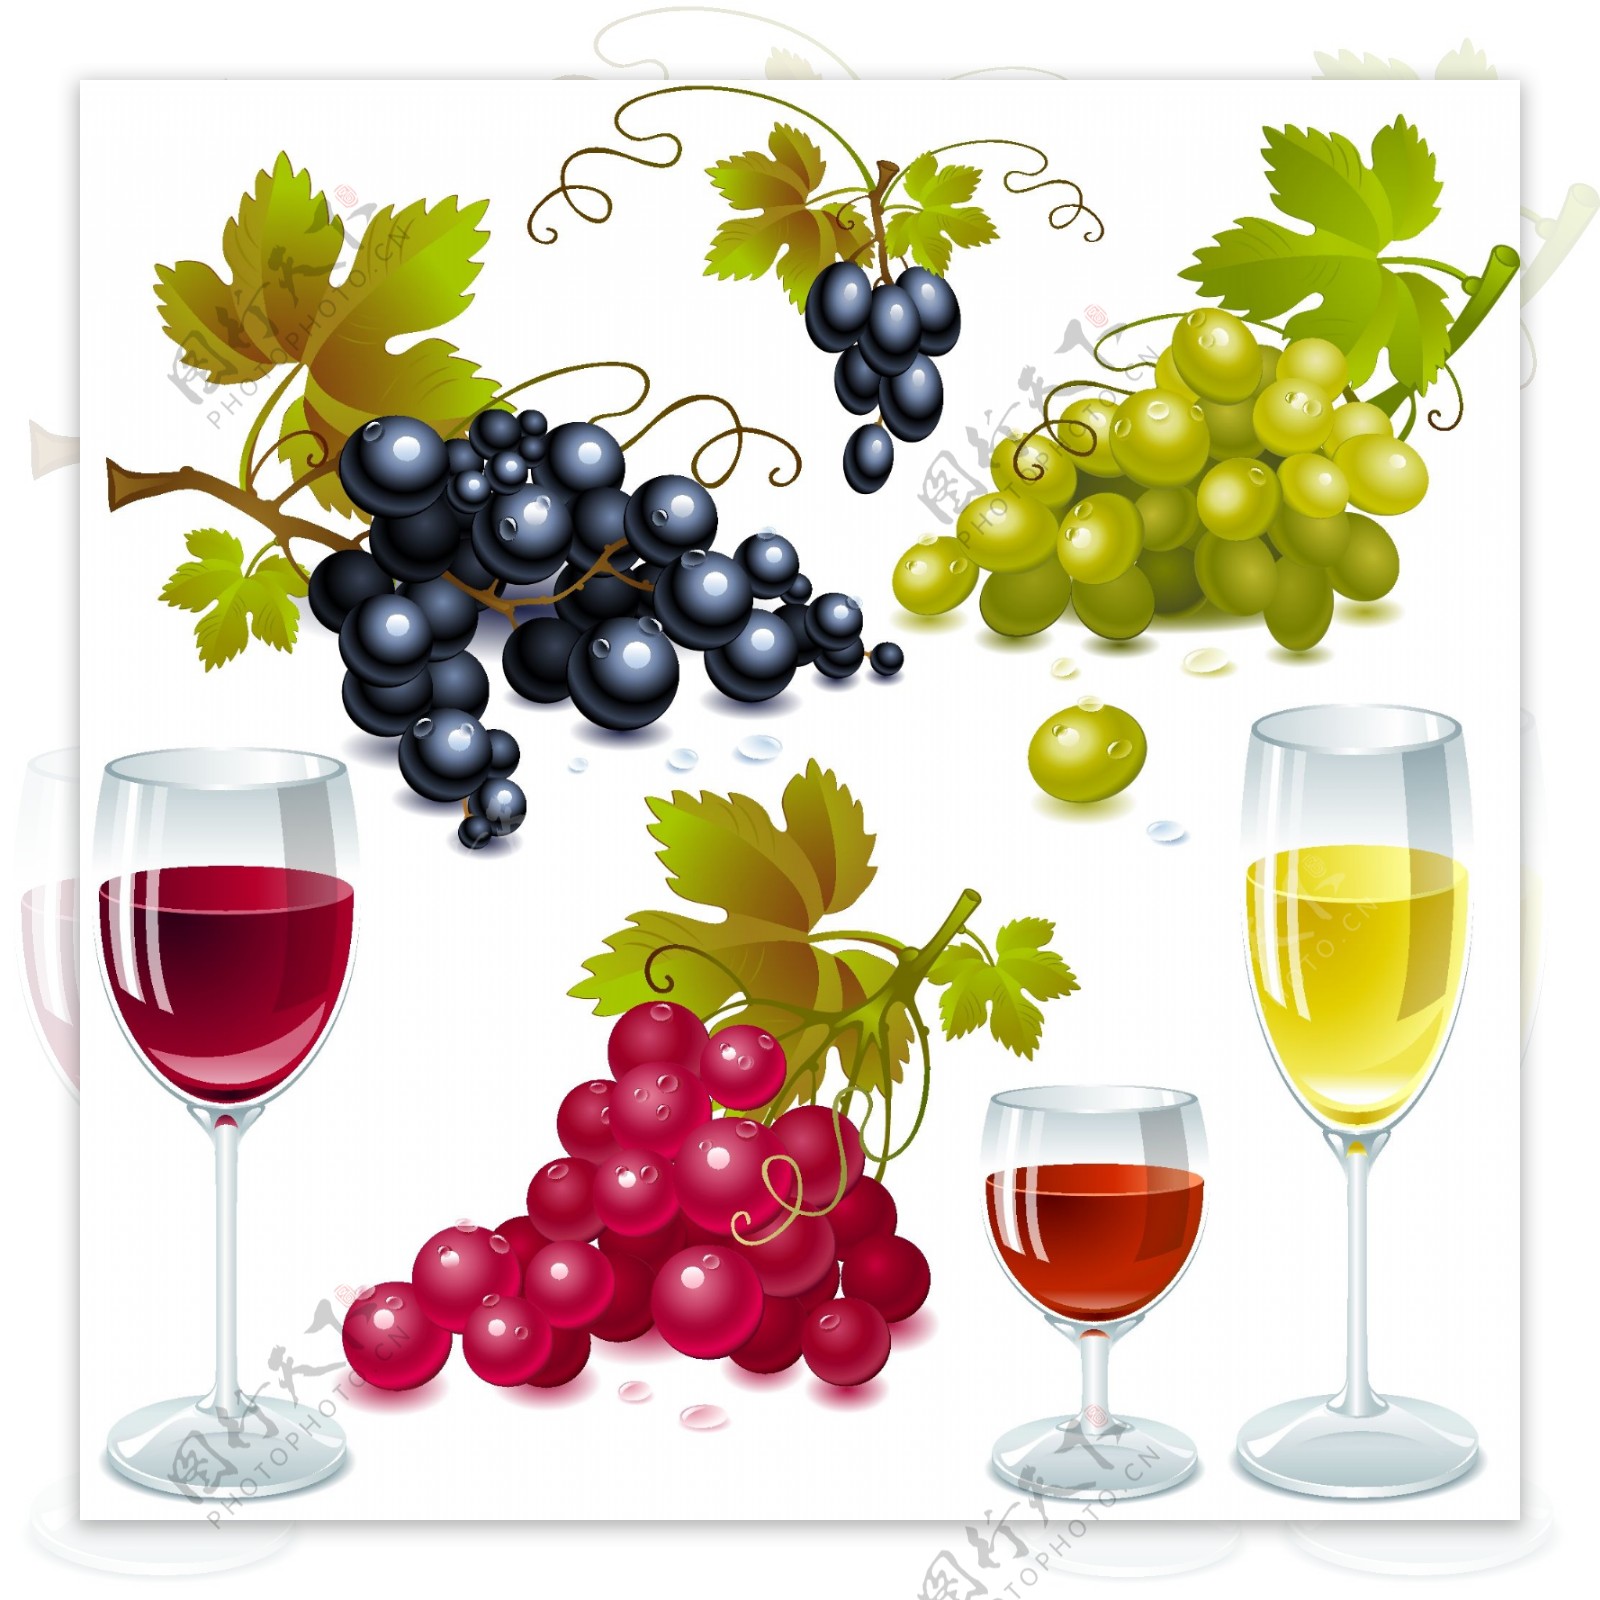 彩色葡萄红酒杯海报设计素材